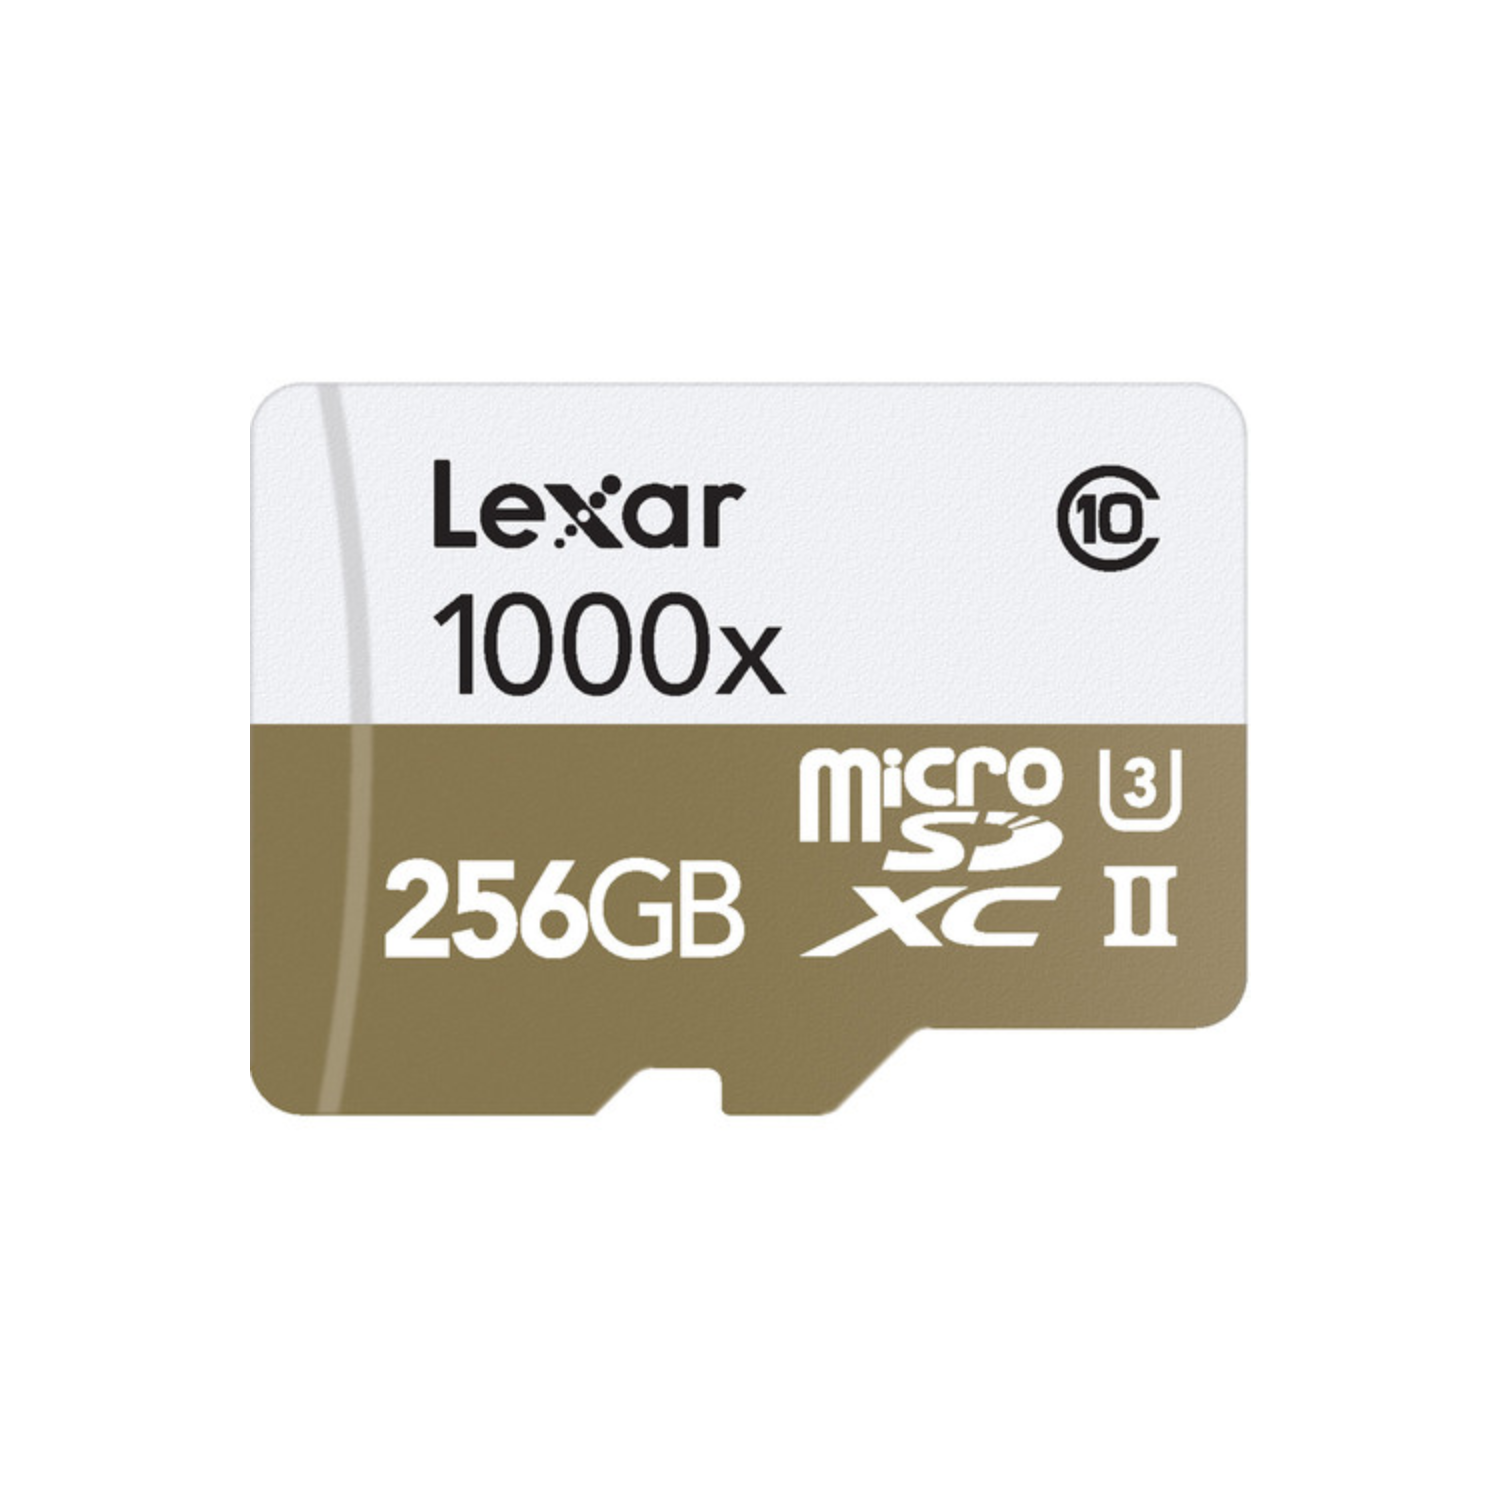 Lexar 256 Go Professional 1000x Microsdxc UHS-II Carte mémoire avec lecteur de carte USB 3.0